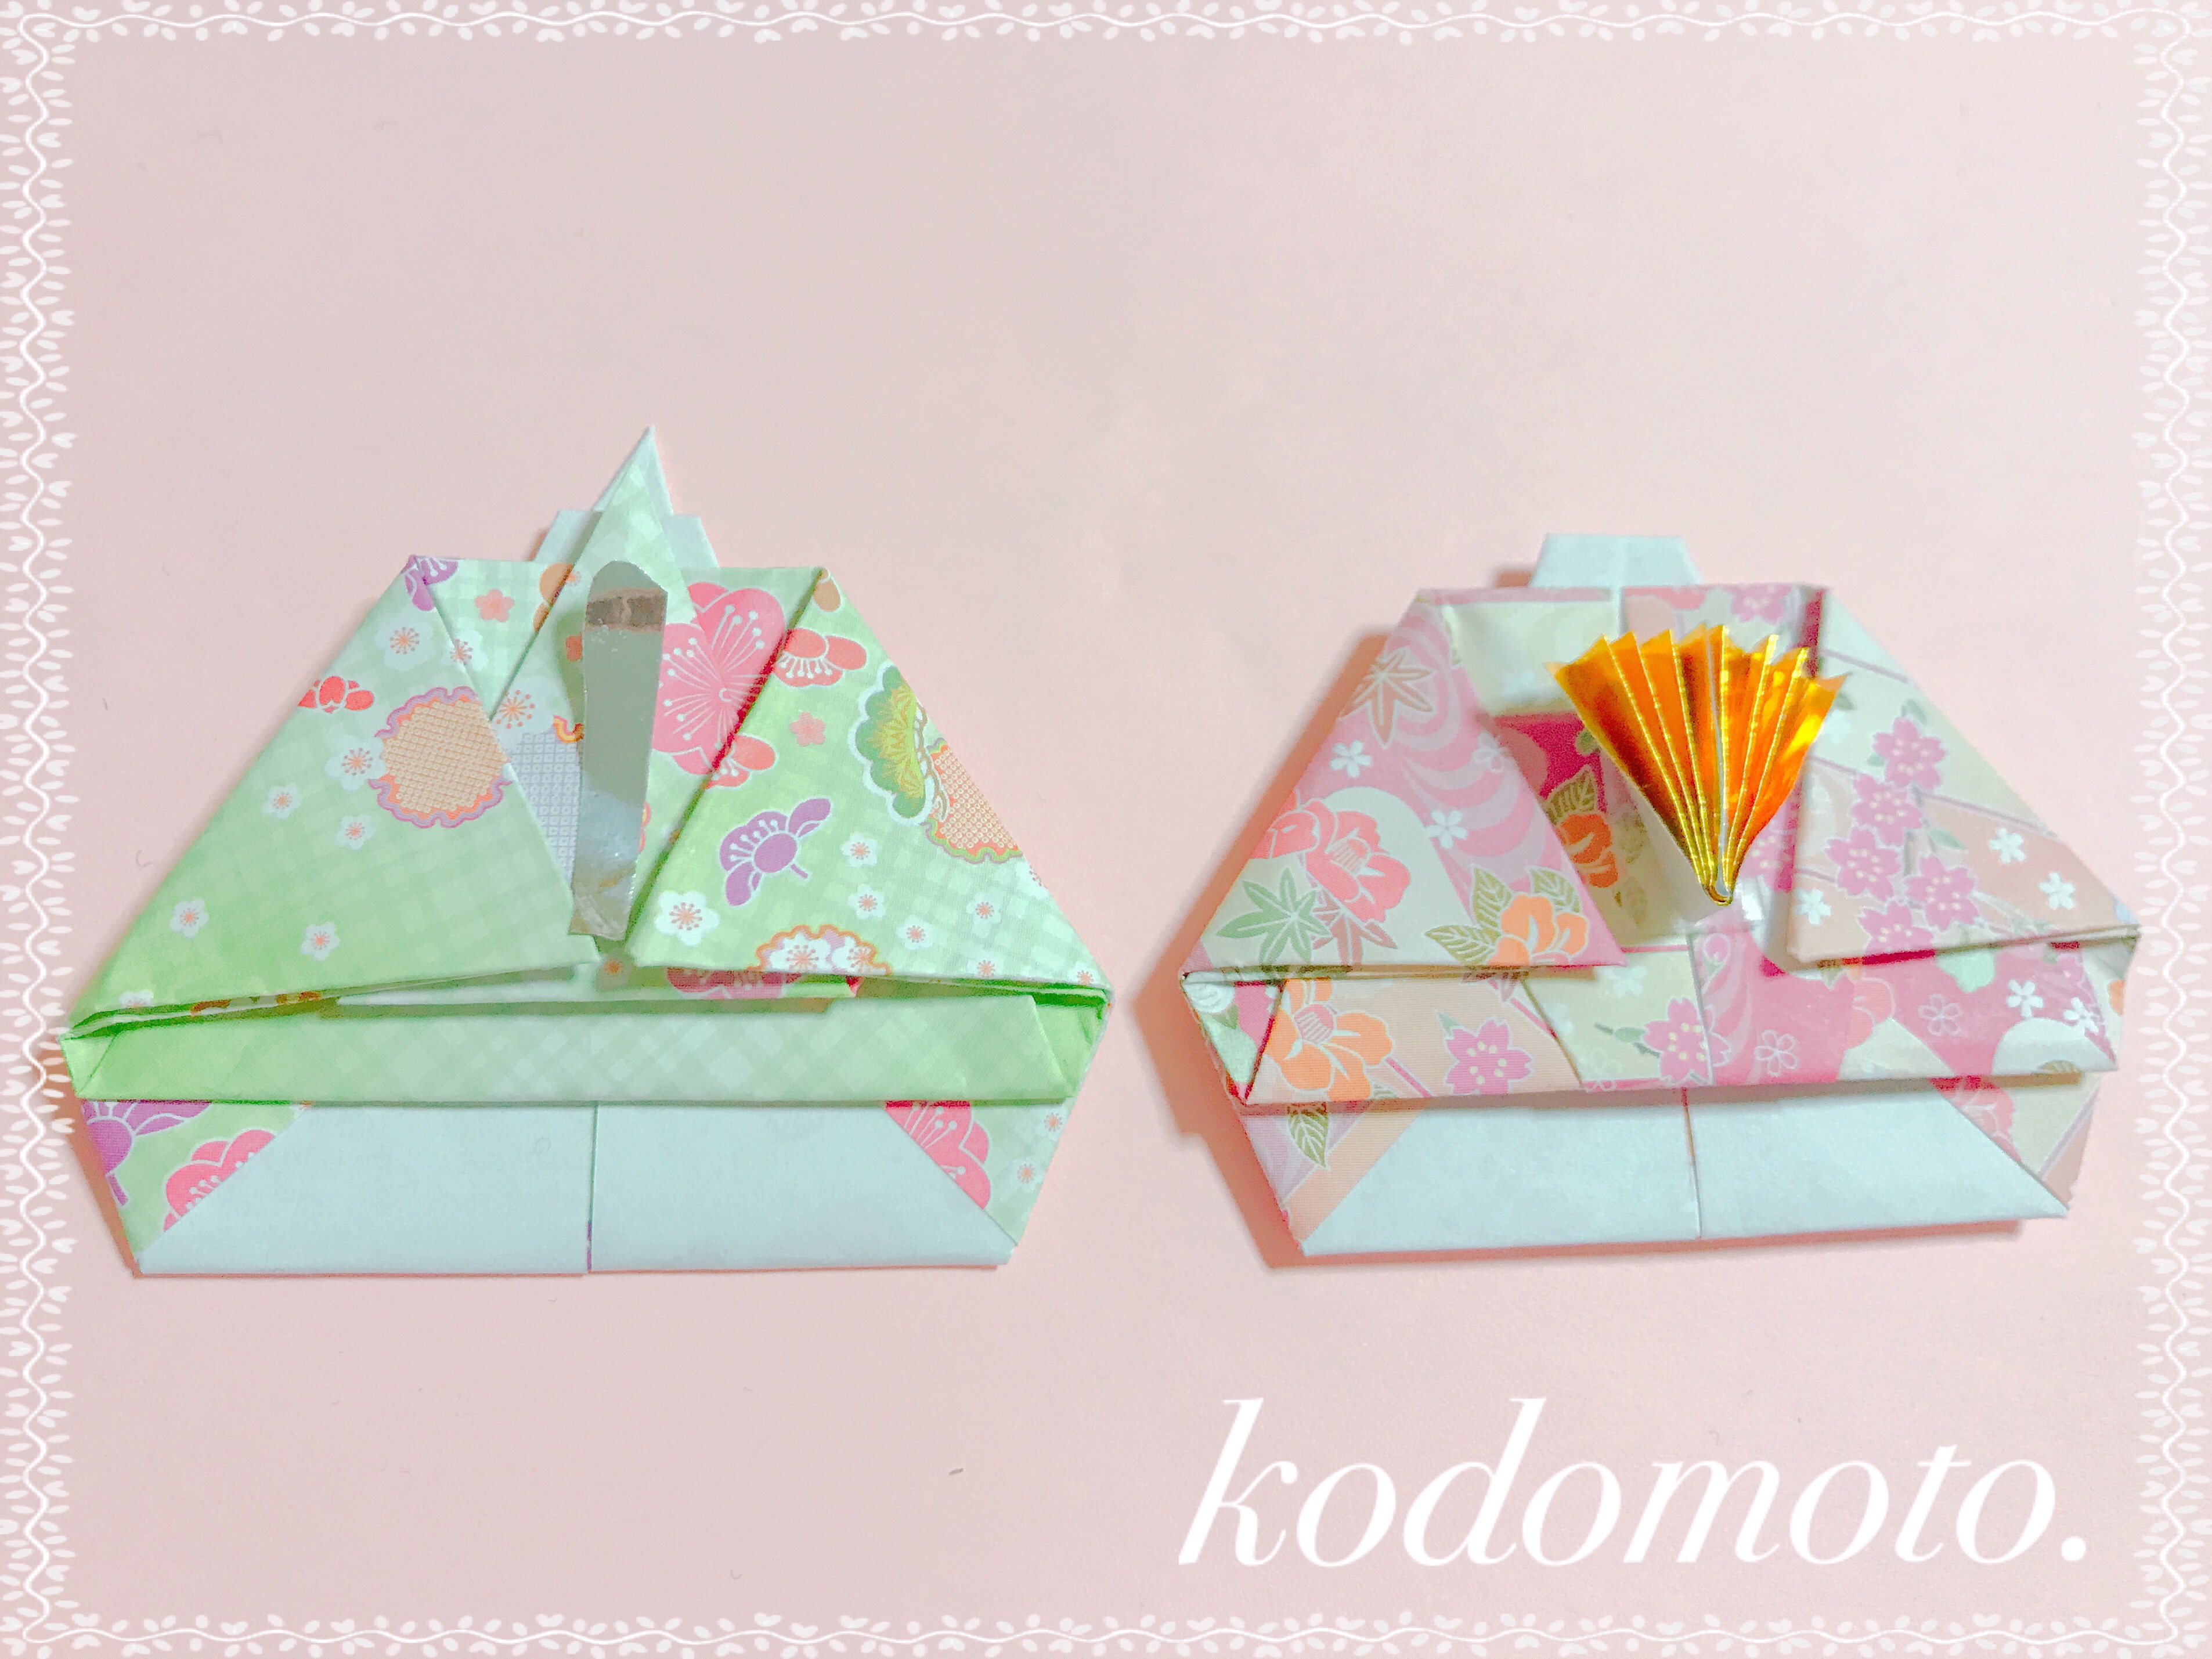 折り紙でお雛様の折り方 平面タイプで簡単なのはこれ Kodomoto